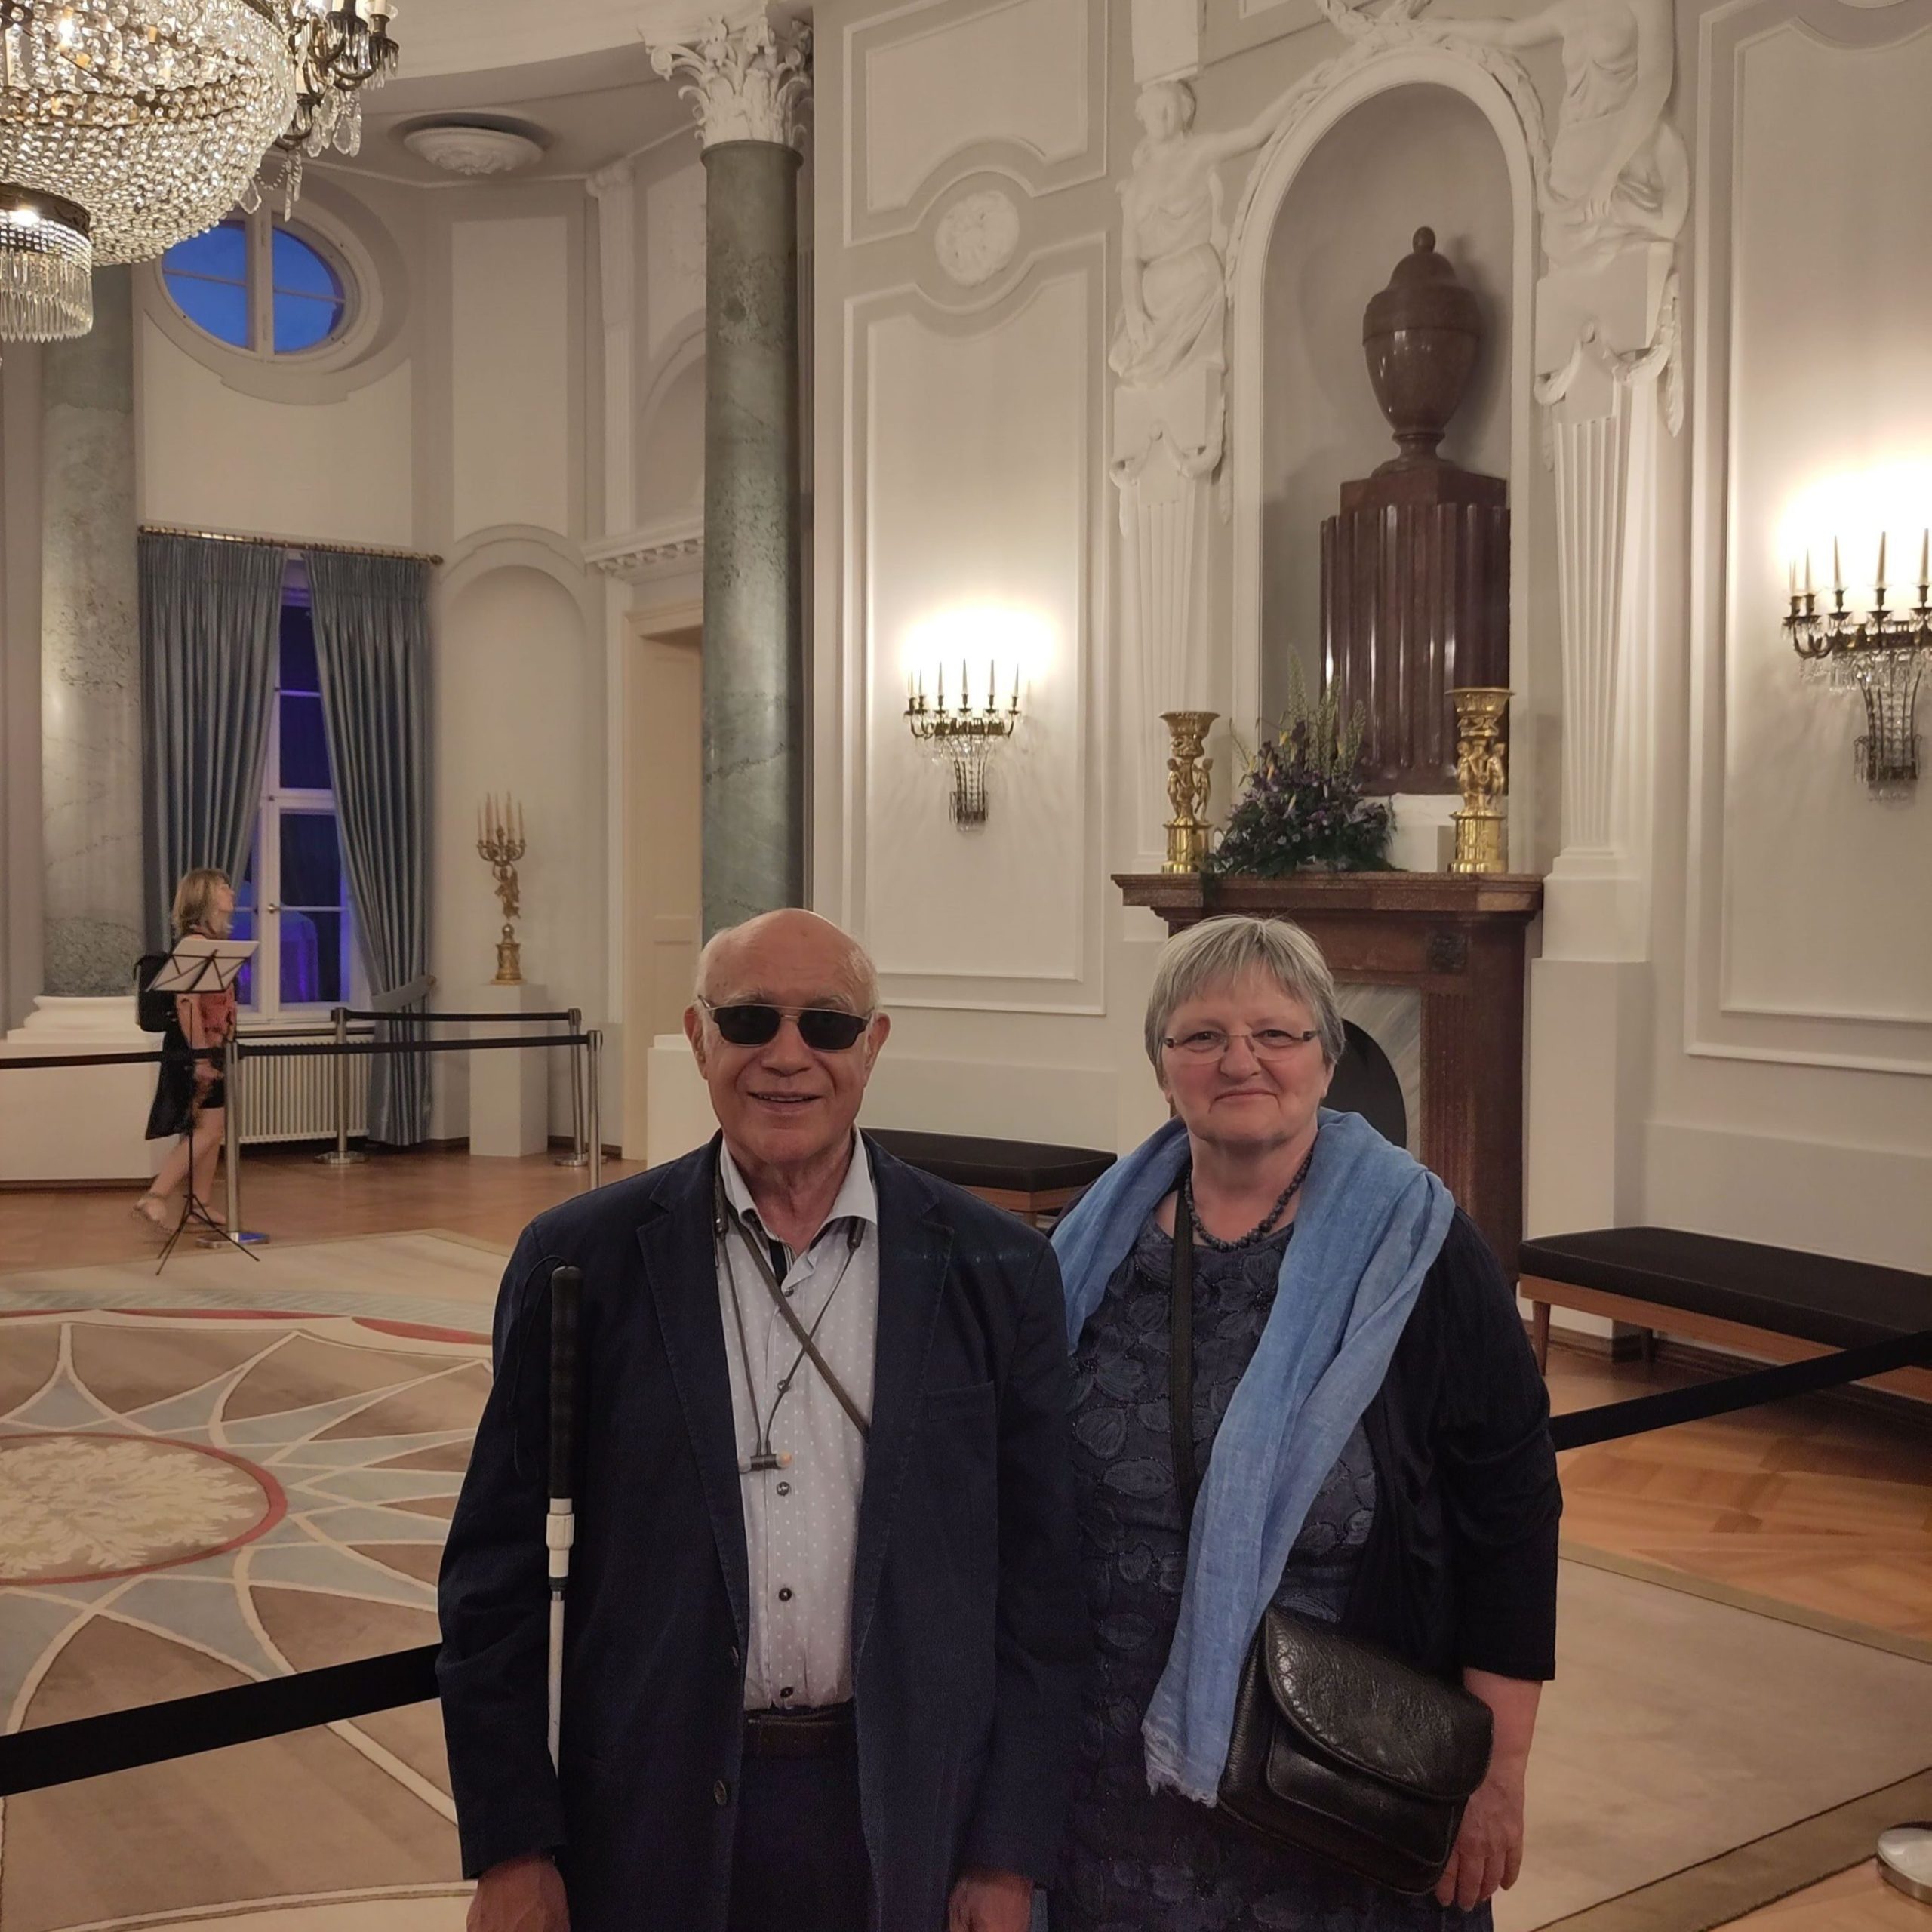 Vereinsgründer Dr. Mustapha Ouertani und Vereinsvorsitzende Bernadette Smyrek Ouertani stehen in einem Saal im Schloss Bellevue in Berlin.  